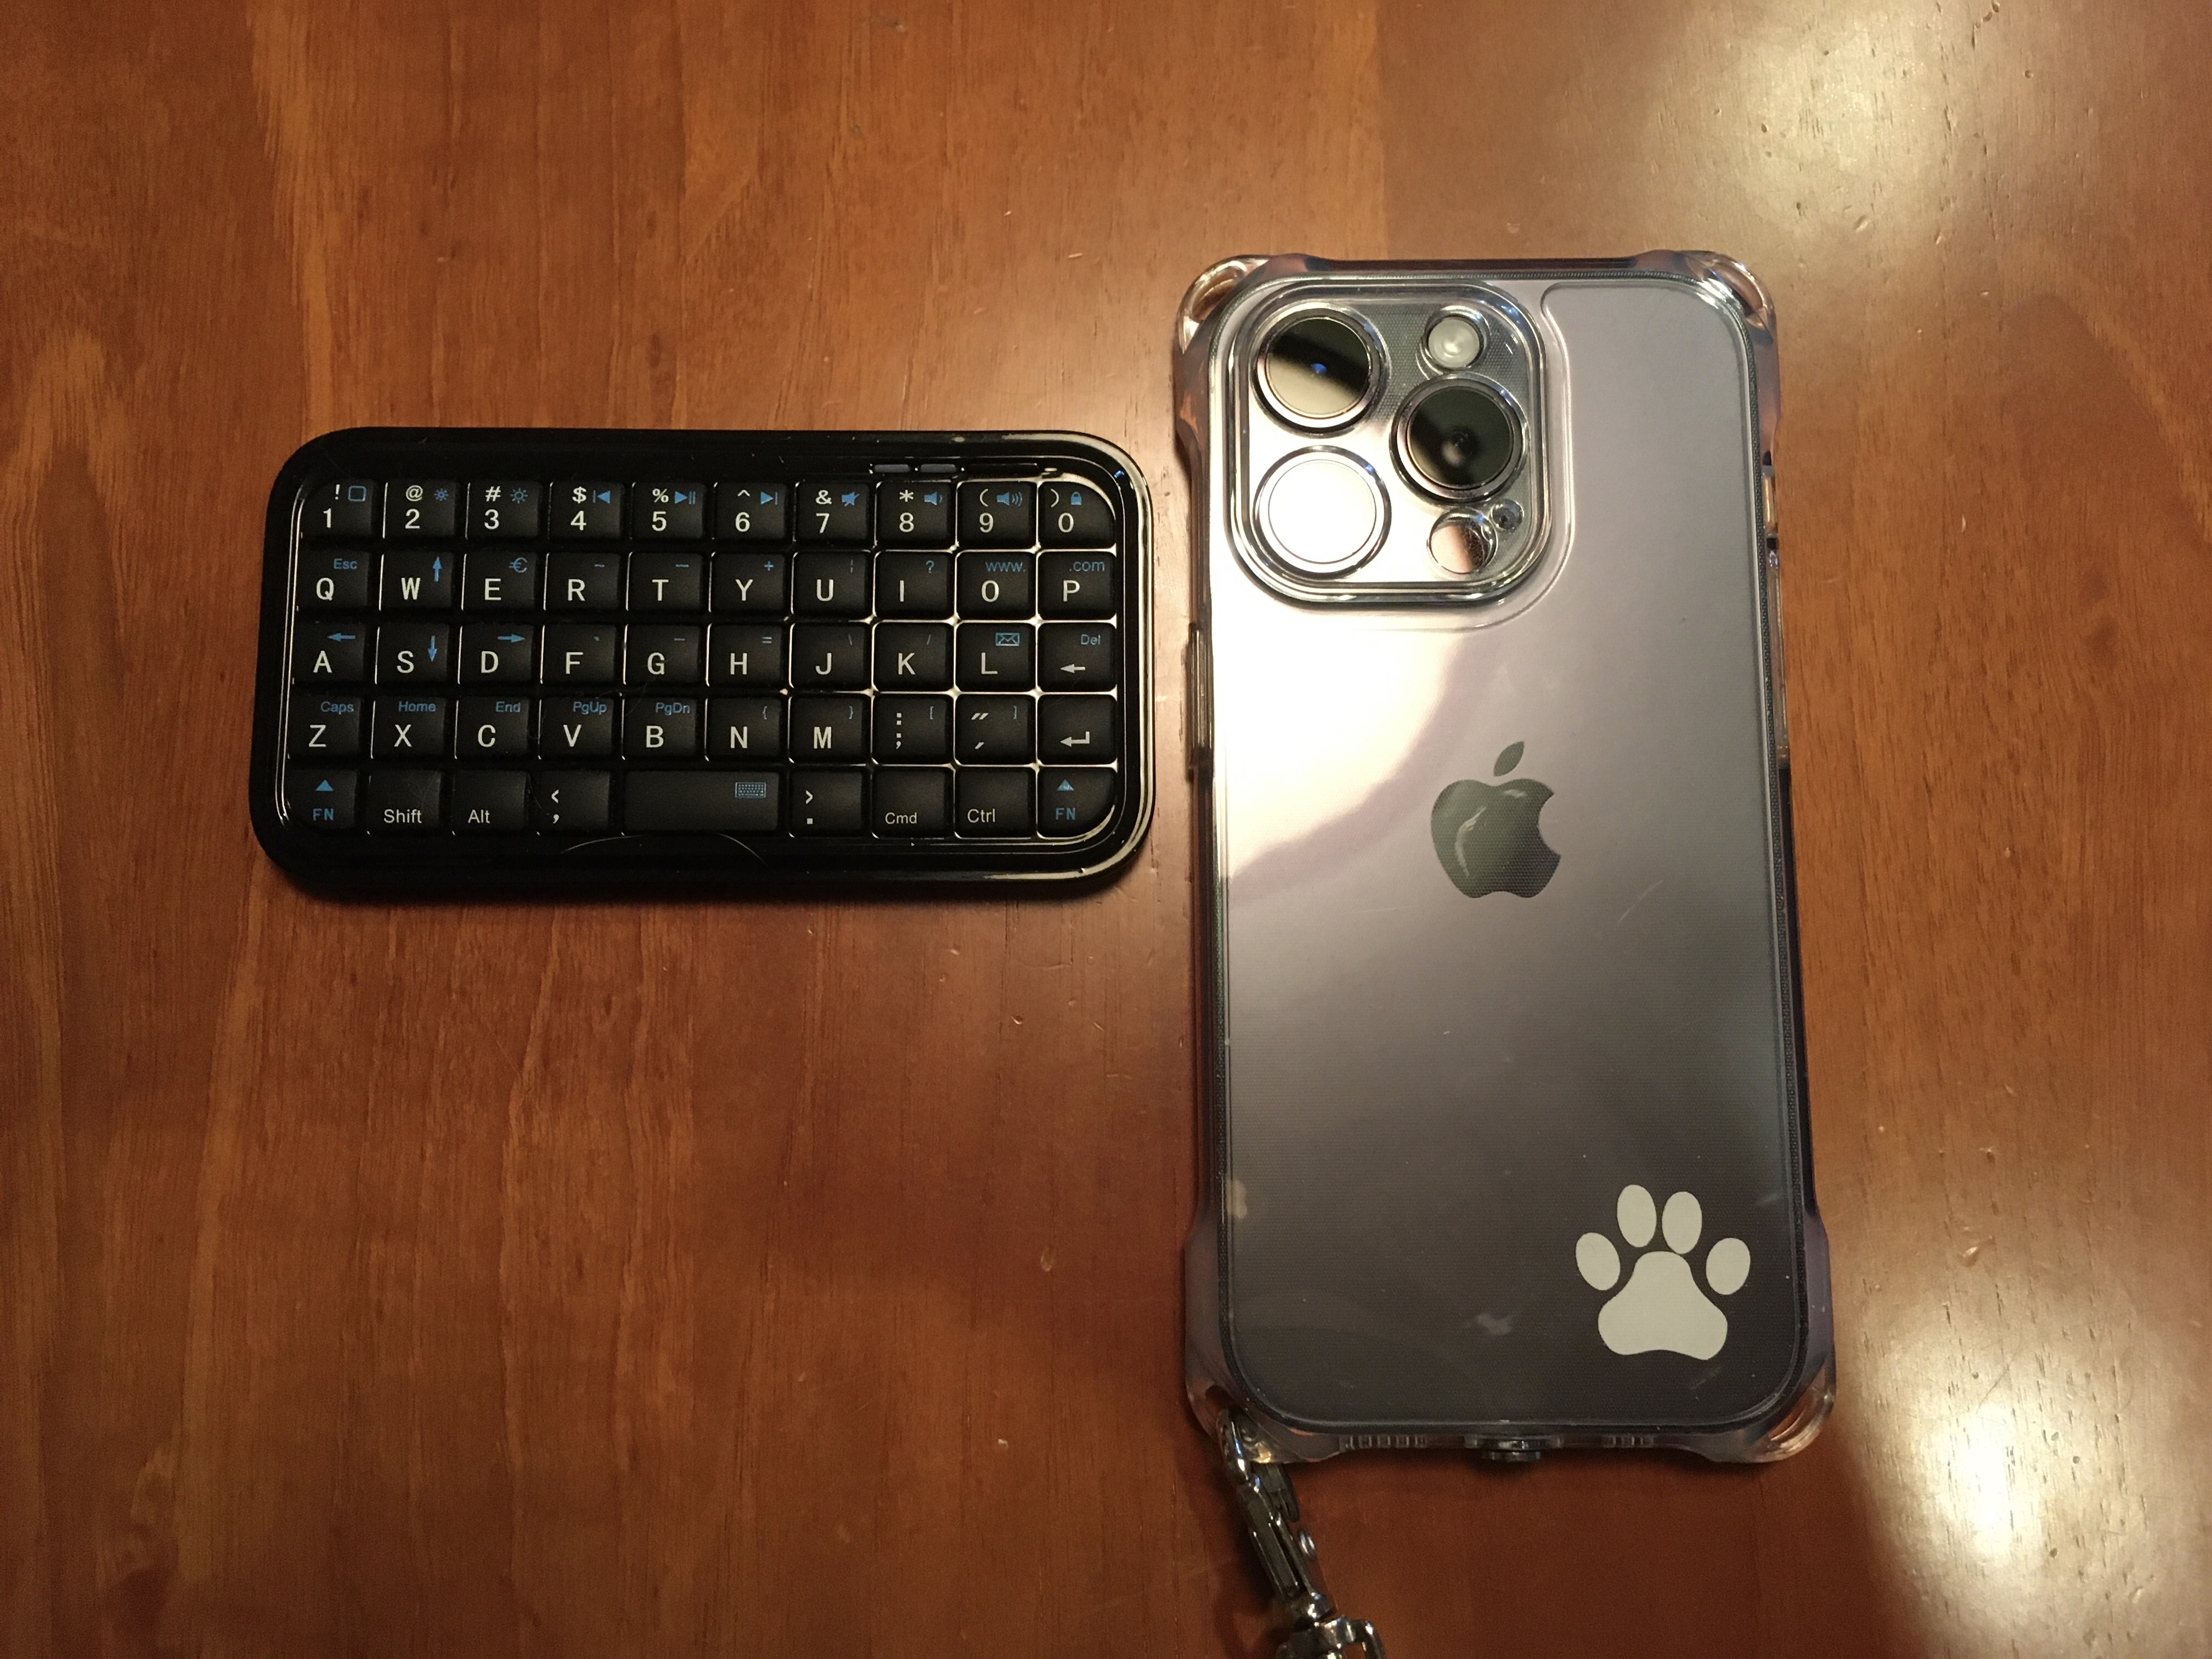 DIWOSHE超小型キーボード本体とiPhone 14 Proを並べて撮った写真。iPhoneと比べて半分近く小さいことがわかります。